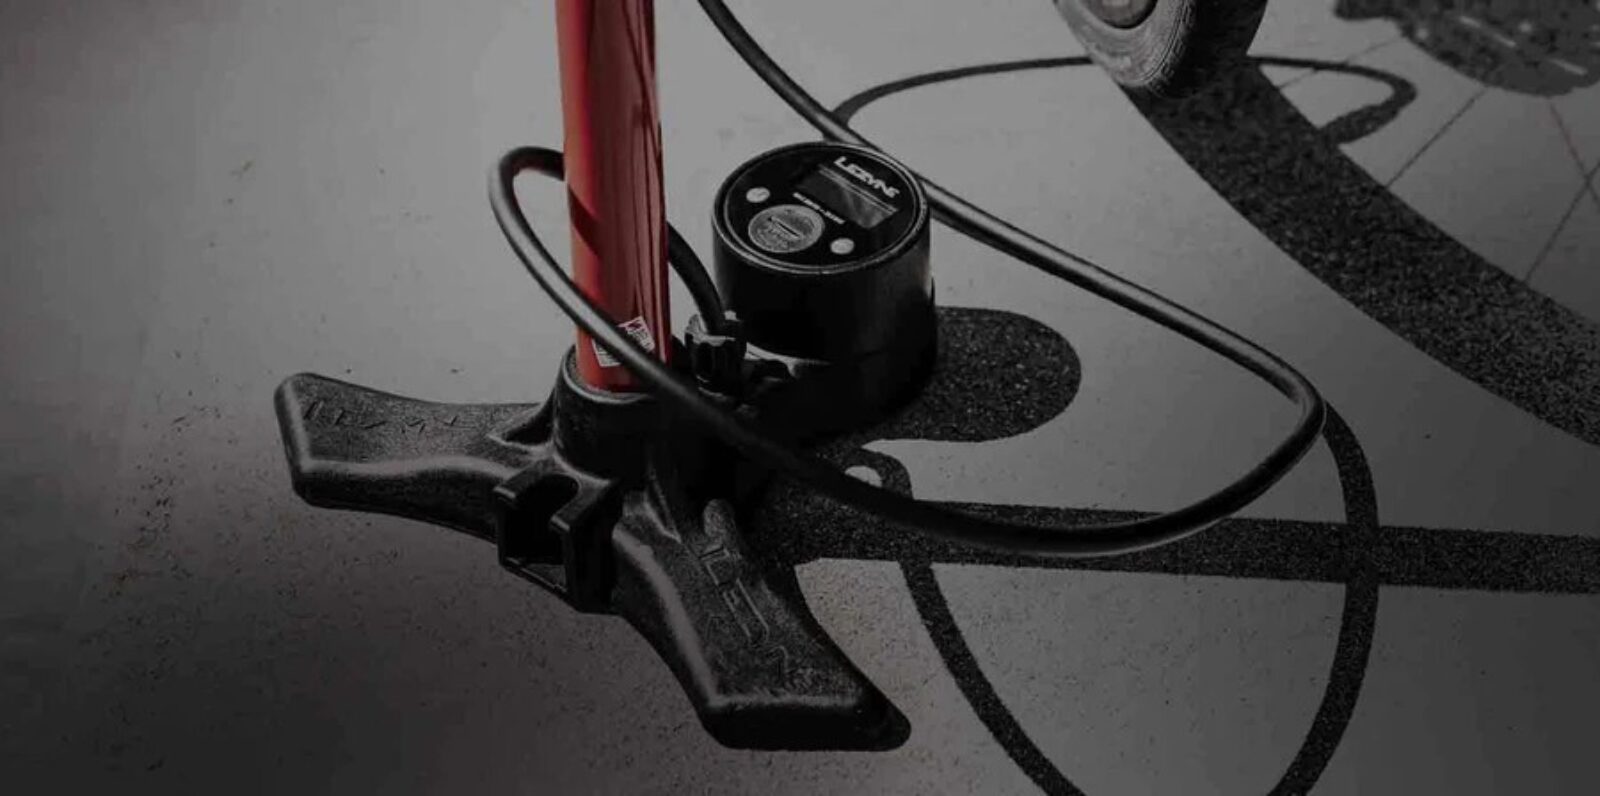 Lezyne fietspomp met ingebouwde drukmeter om de bandenspanning van je fietsband te meten.